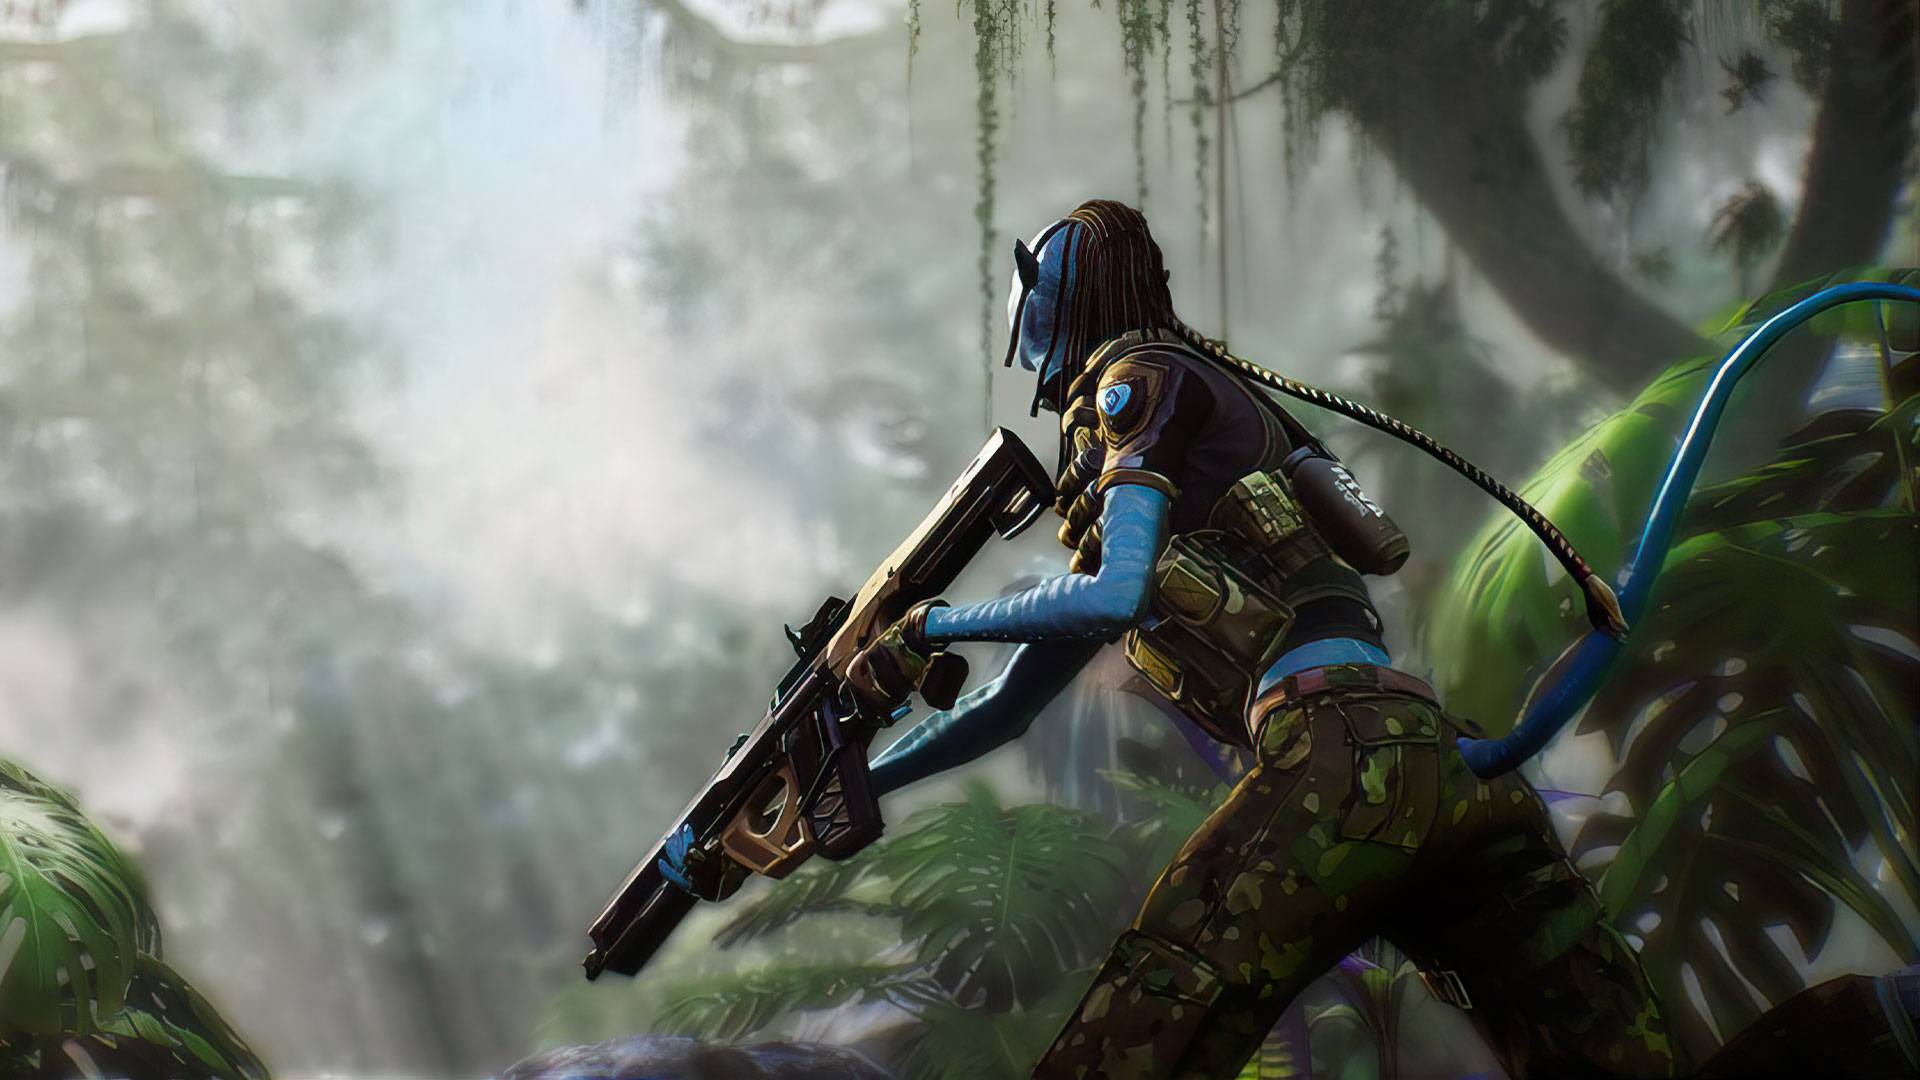 Tải game Avatar teamobi cho máy tính phiên bản mới